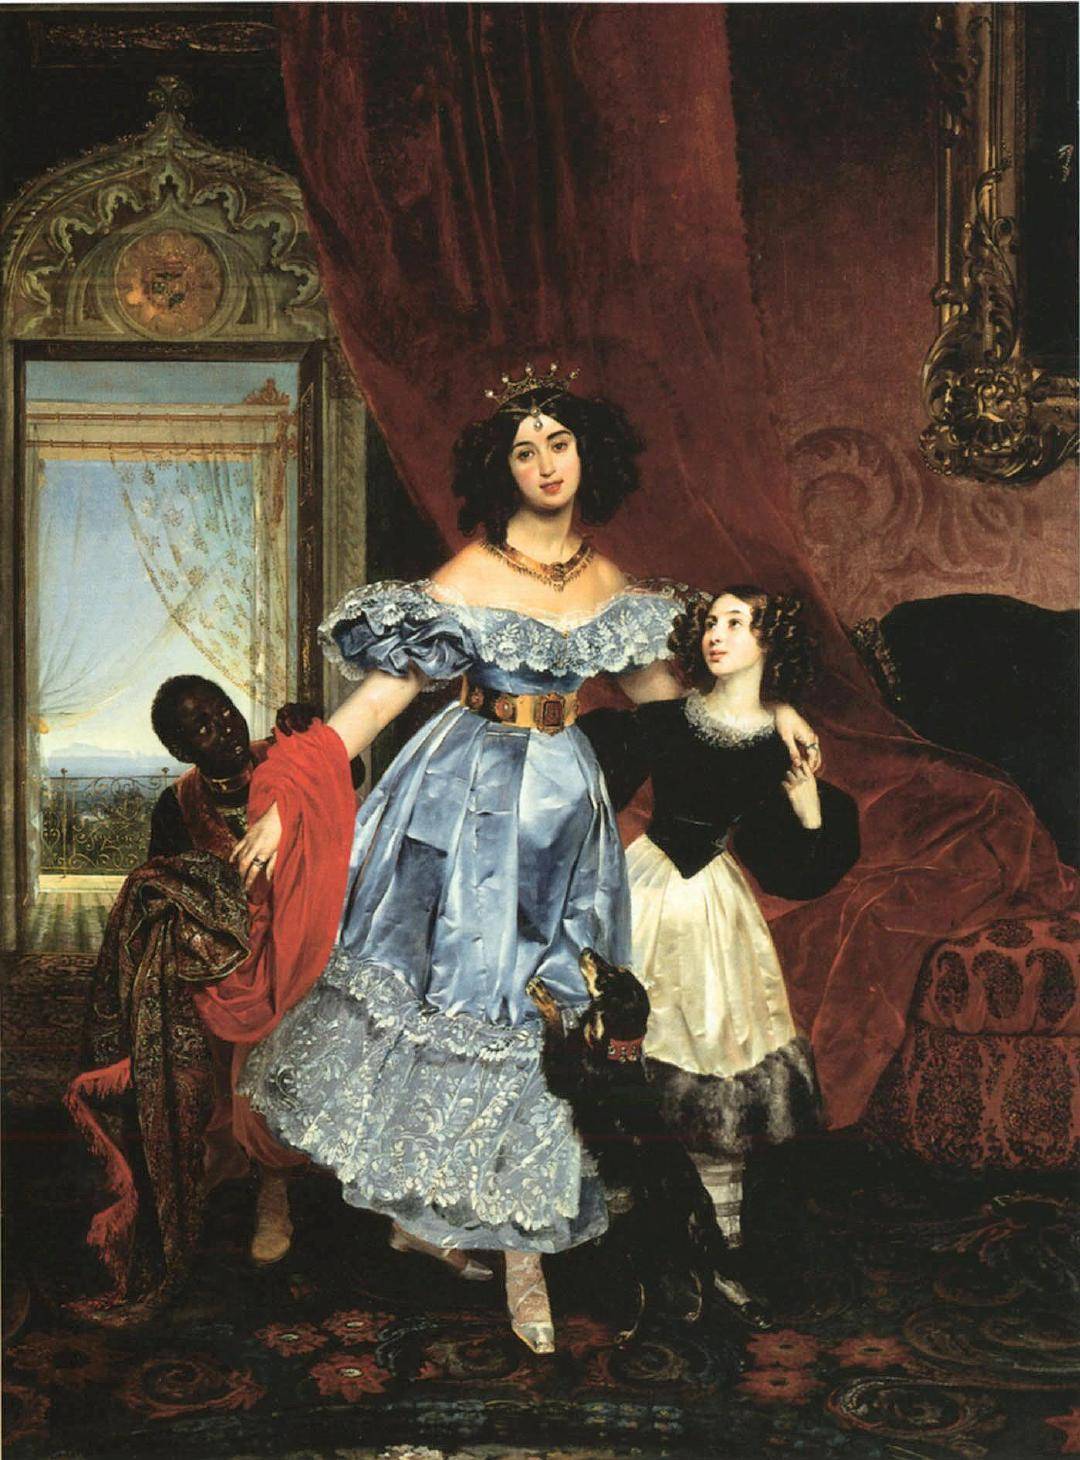 一些1830年代浪漫主义时期的肖像,这时的衣着是如此蓬